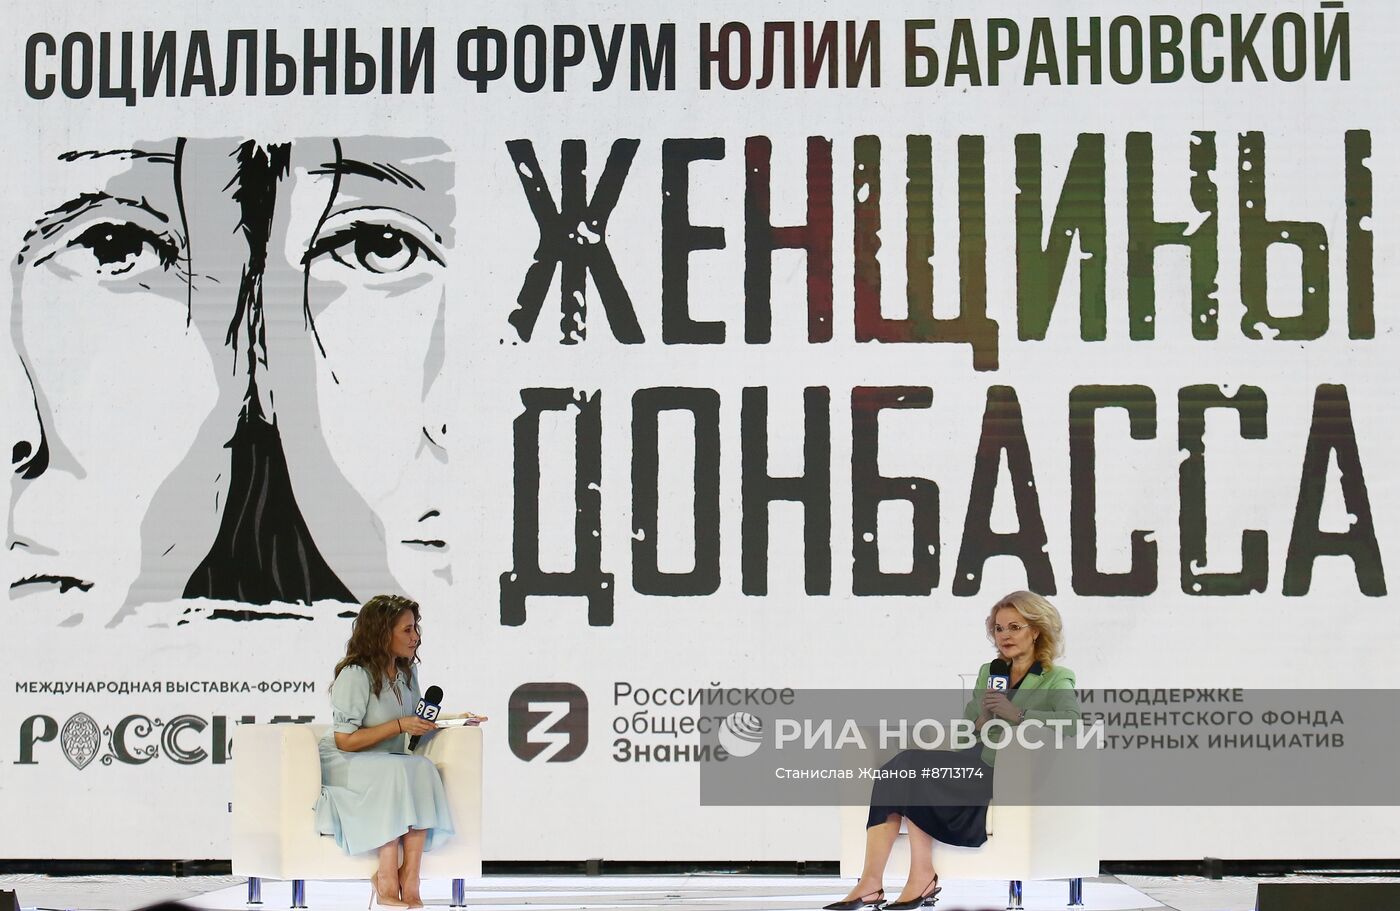 Выставка "Россия". Открытие и стратегическая сессия социального форума "Женщины Донбасса"